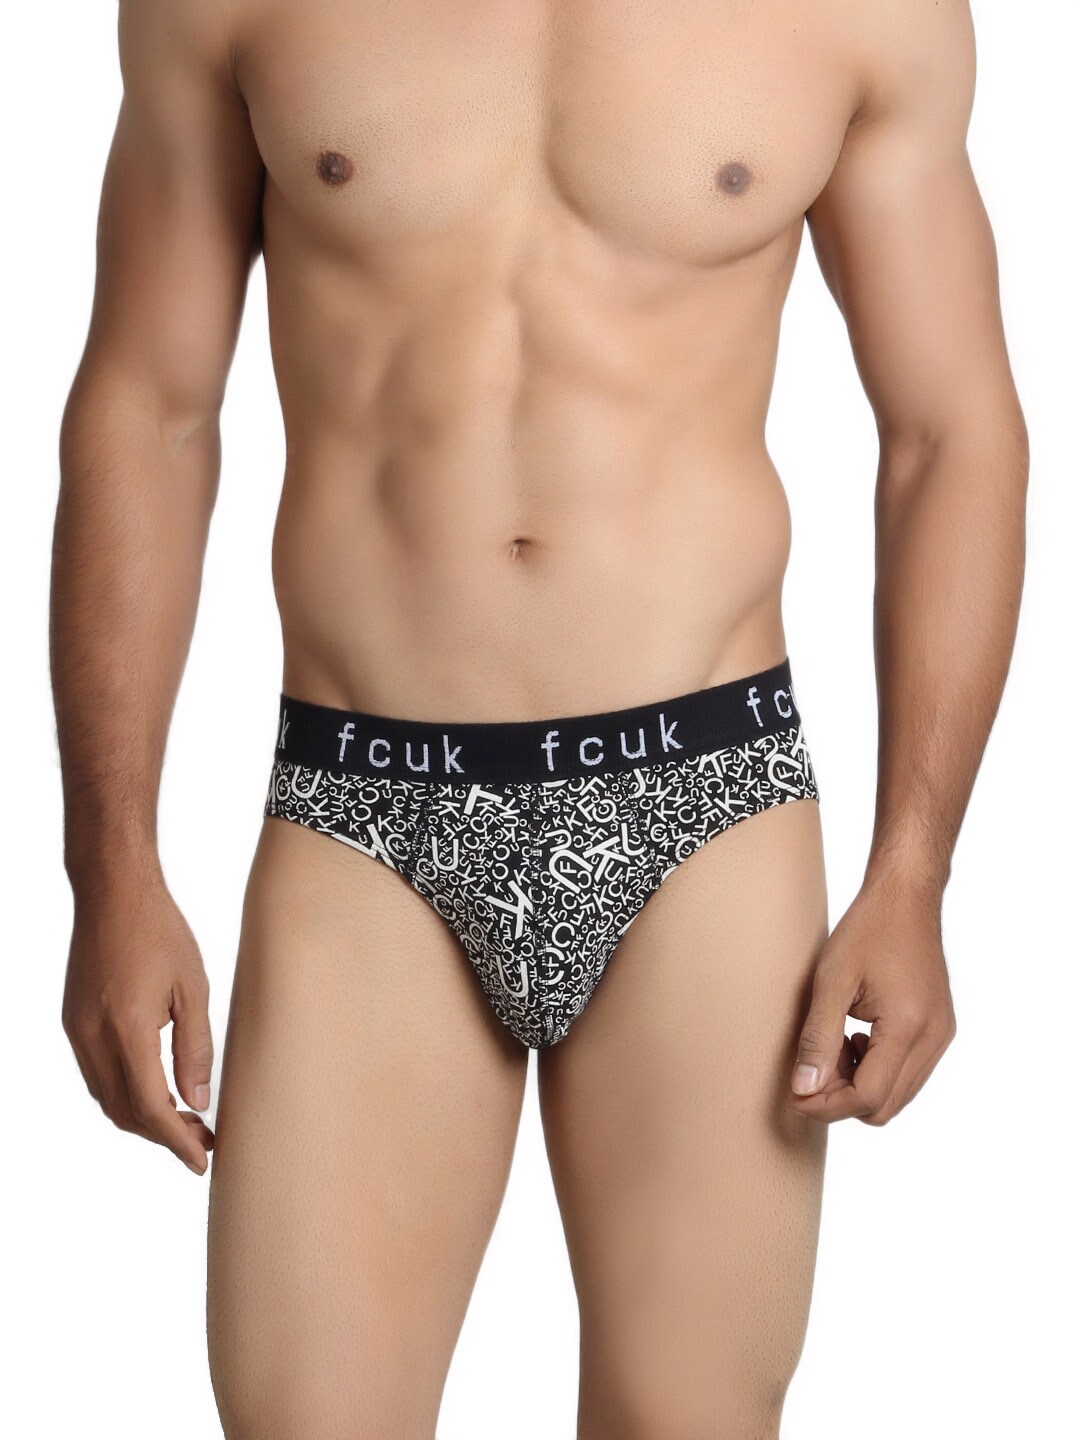 FCUK Underwear Men Black Brief